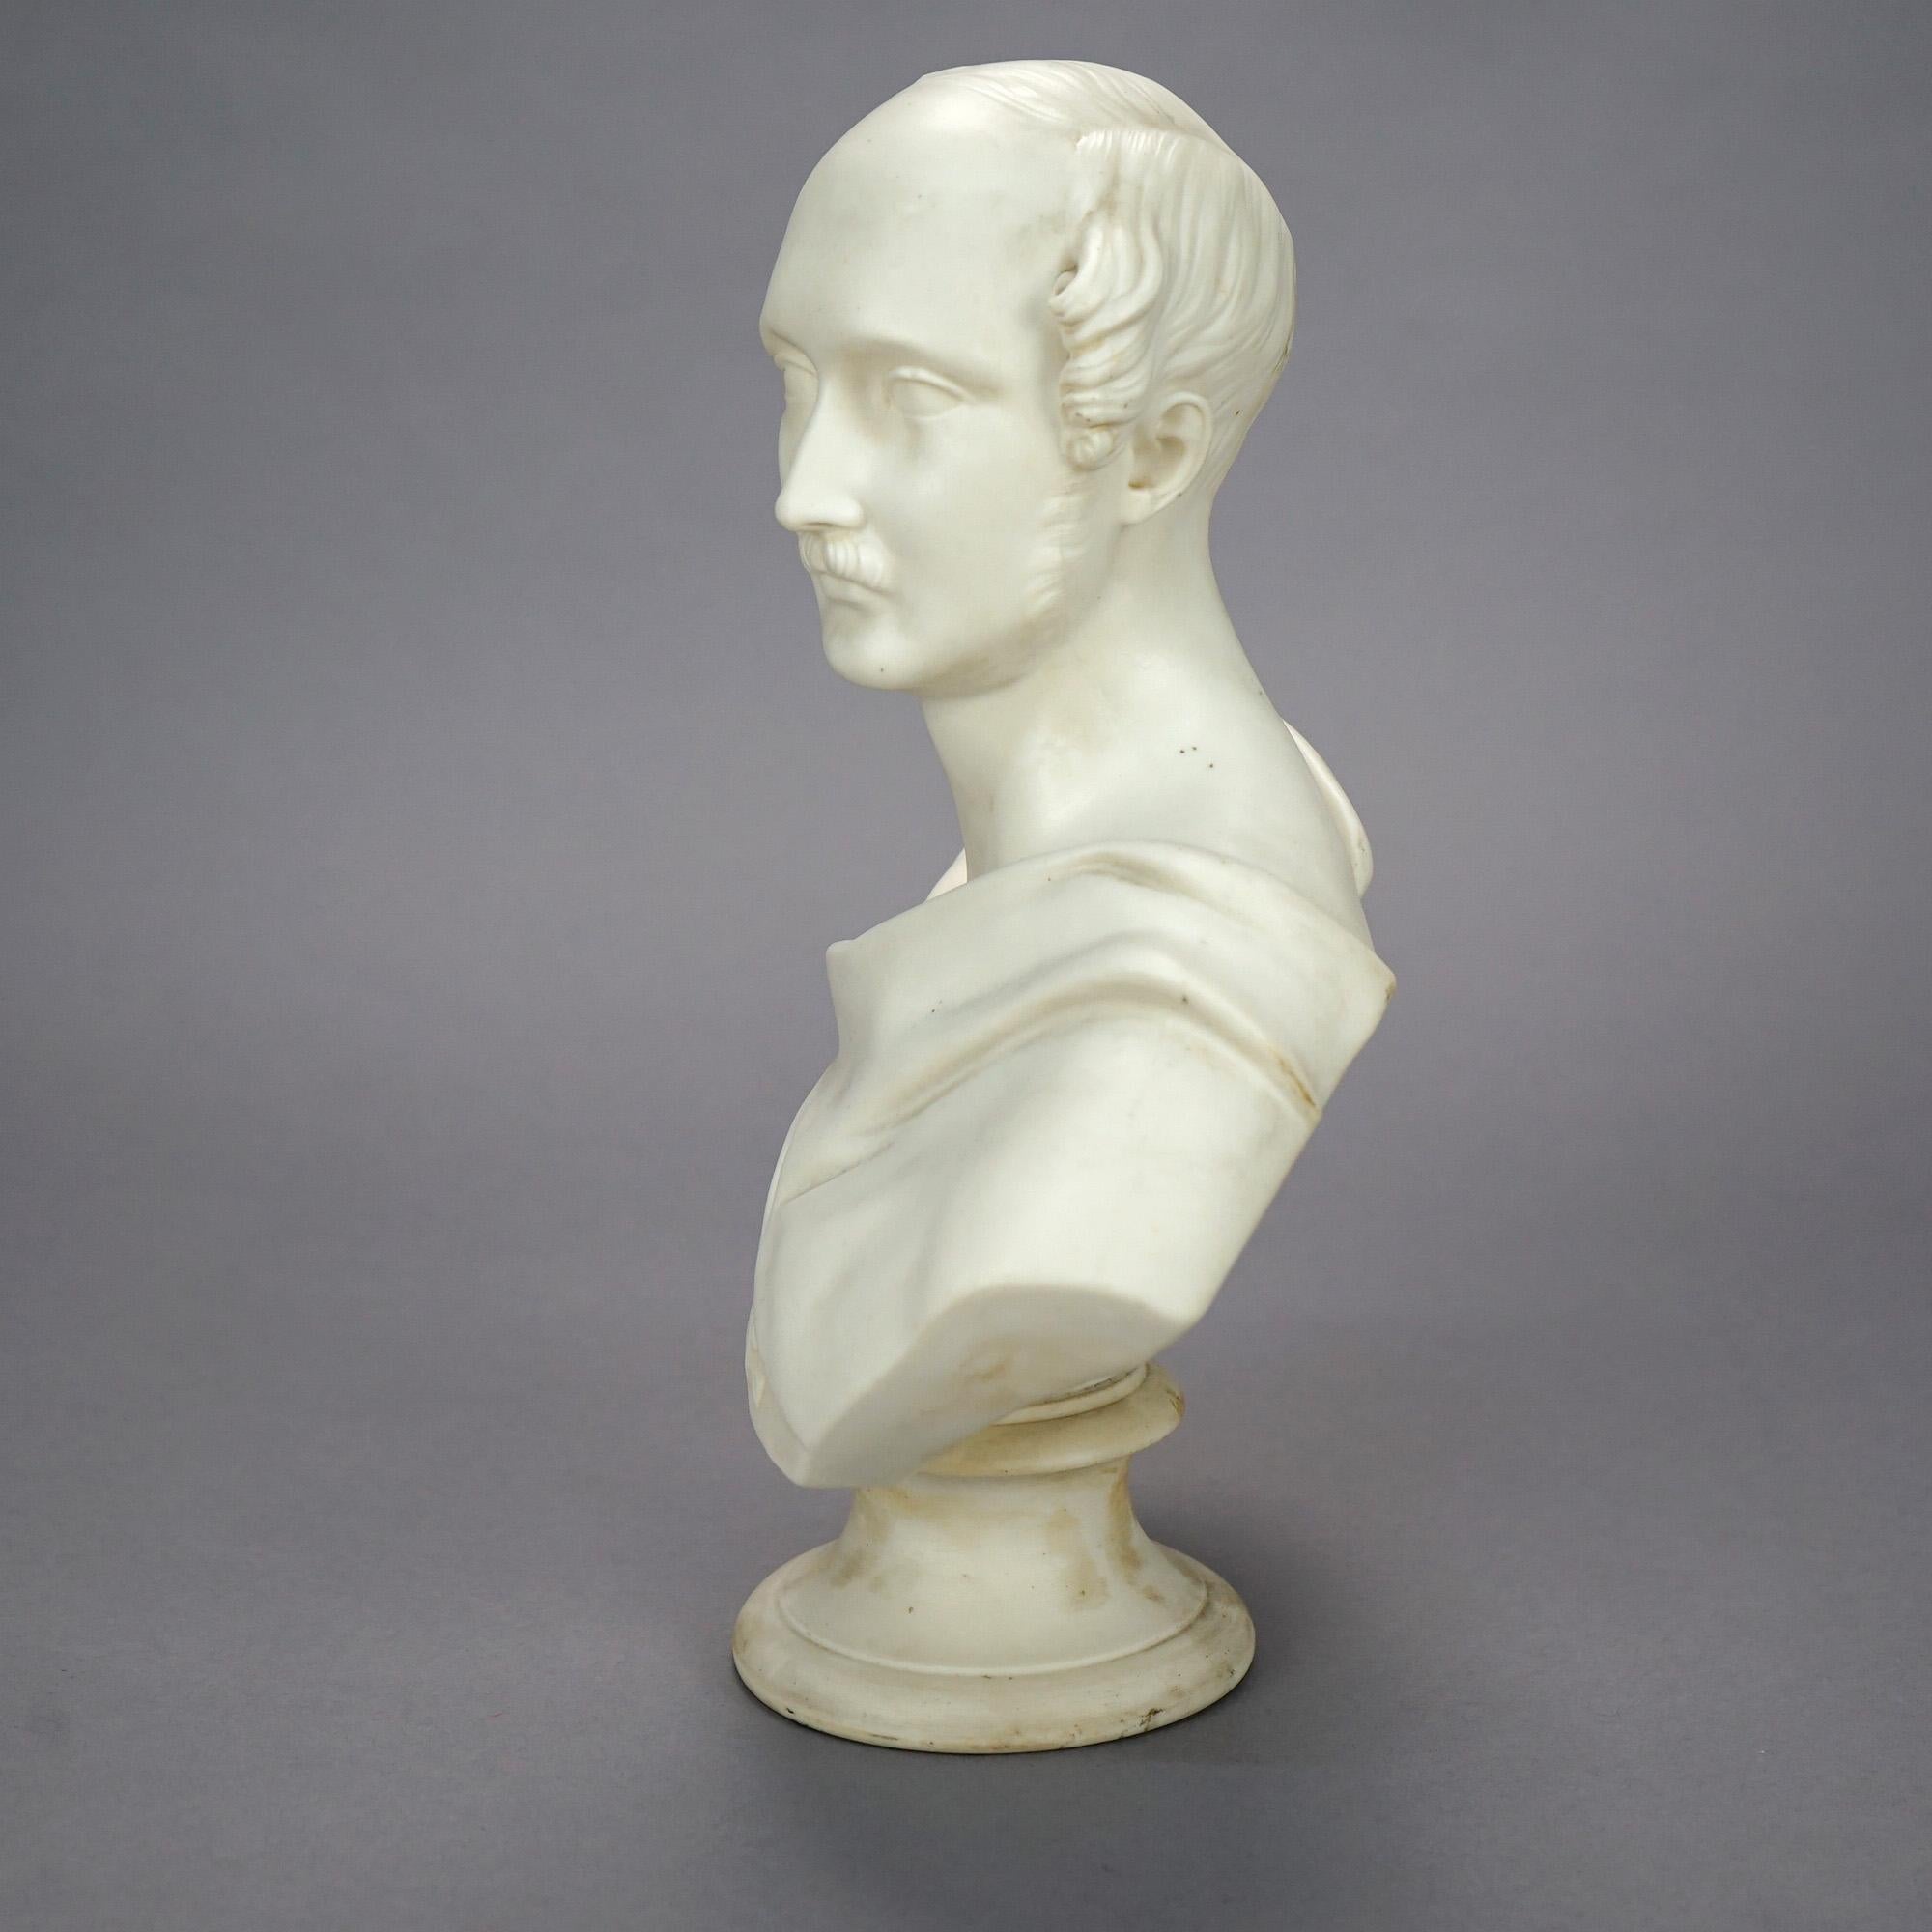 Porcelain Antique English Classical Parian Male Bust Sculpture, J. Jones Worcester, 19th C